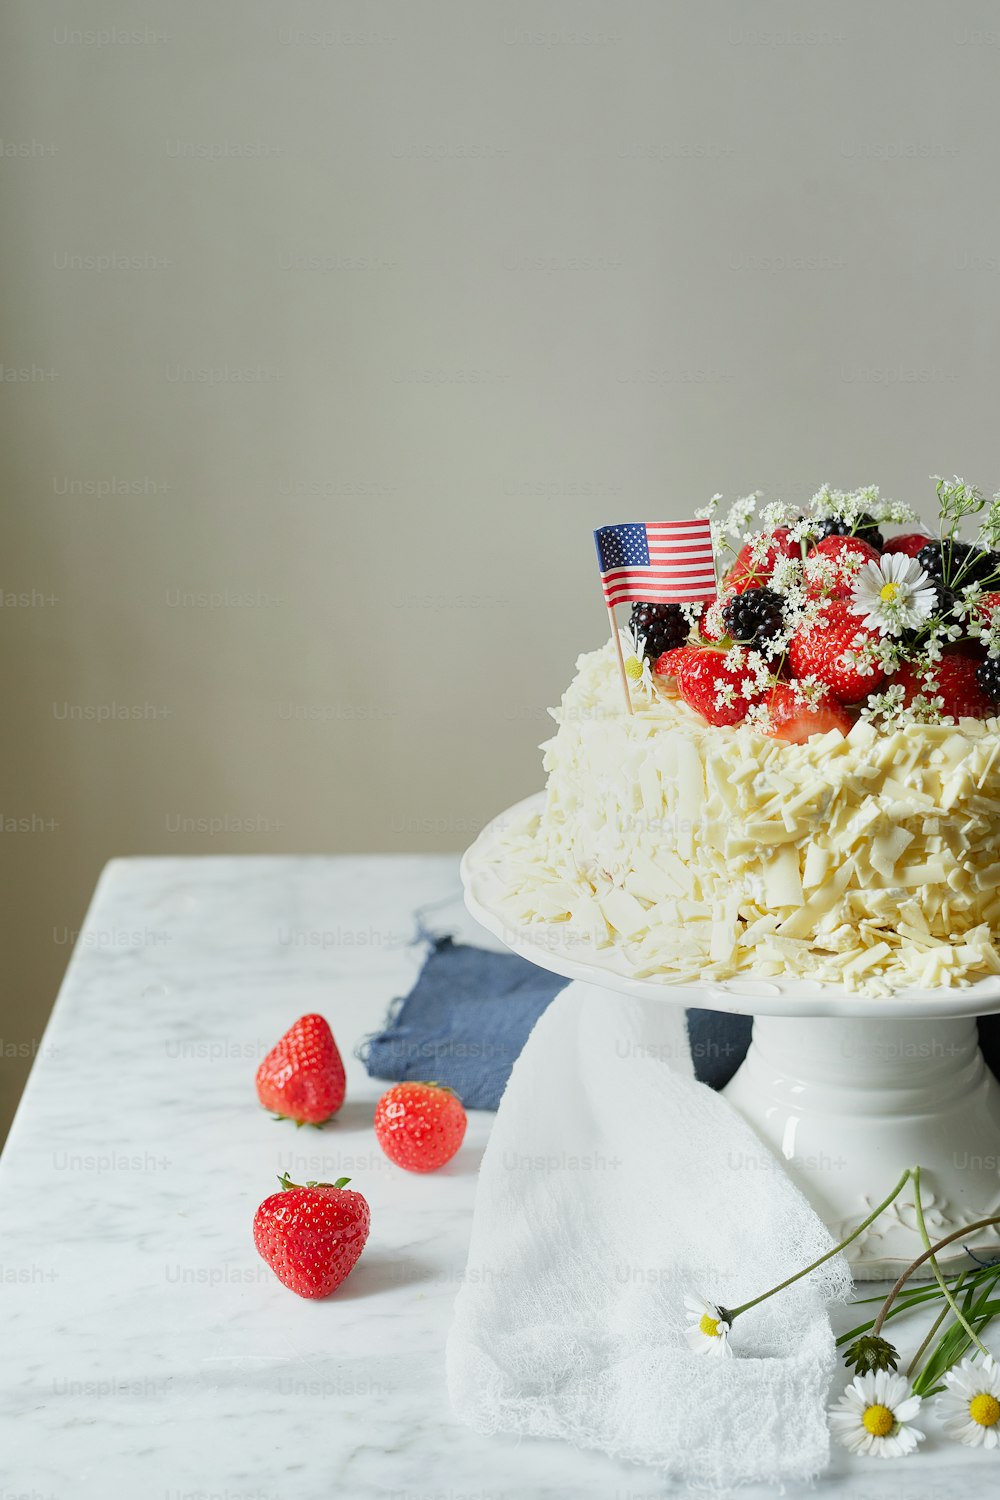 그 위에 딸기와 꽃을 얹은 케이크